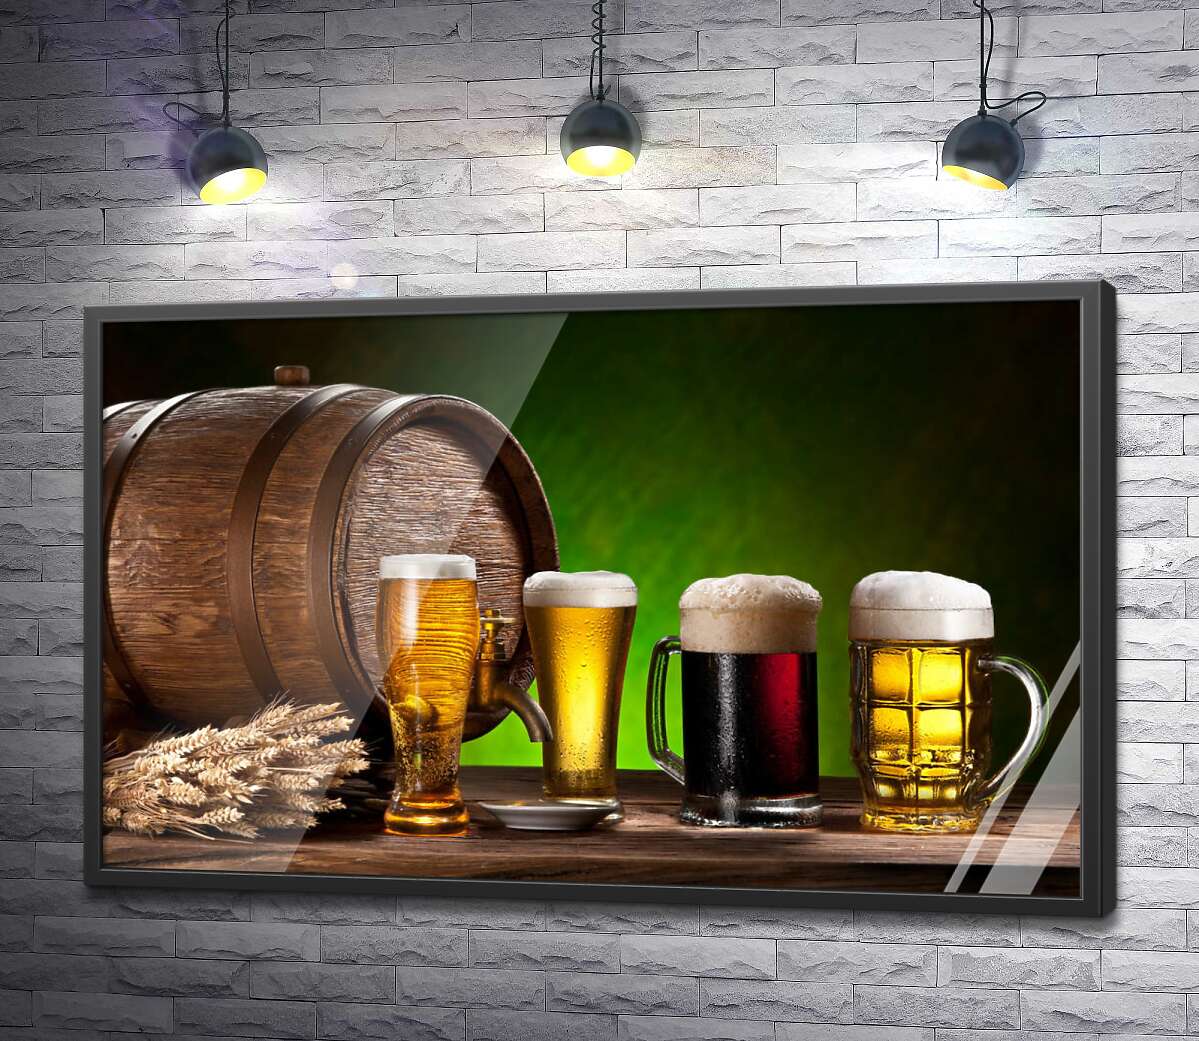 постер Различные сорта пива пенятся в прозрачных бокалах у бочки